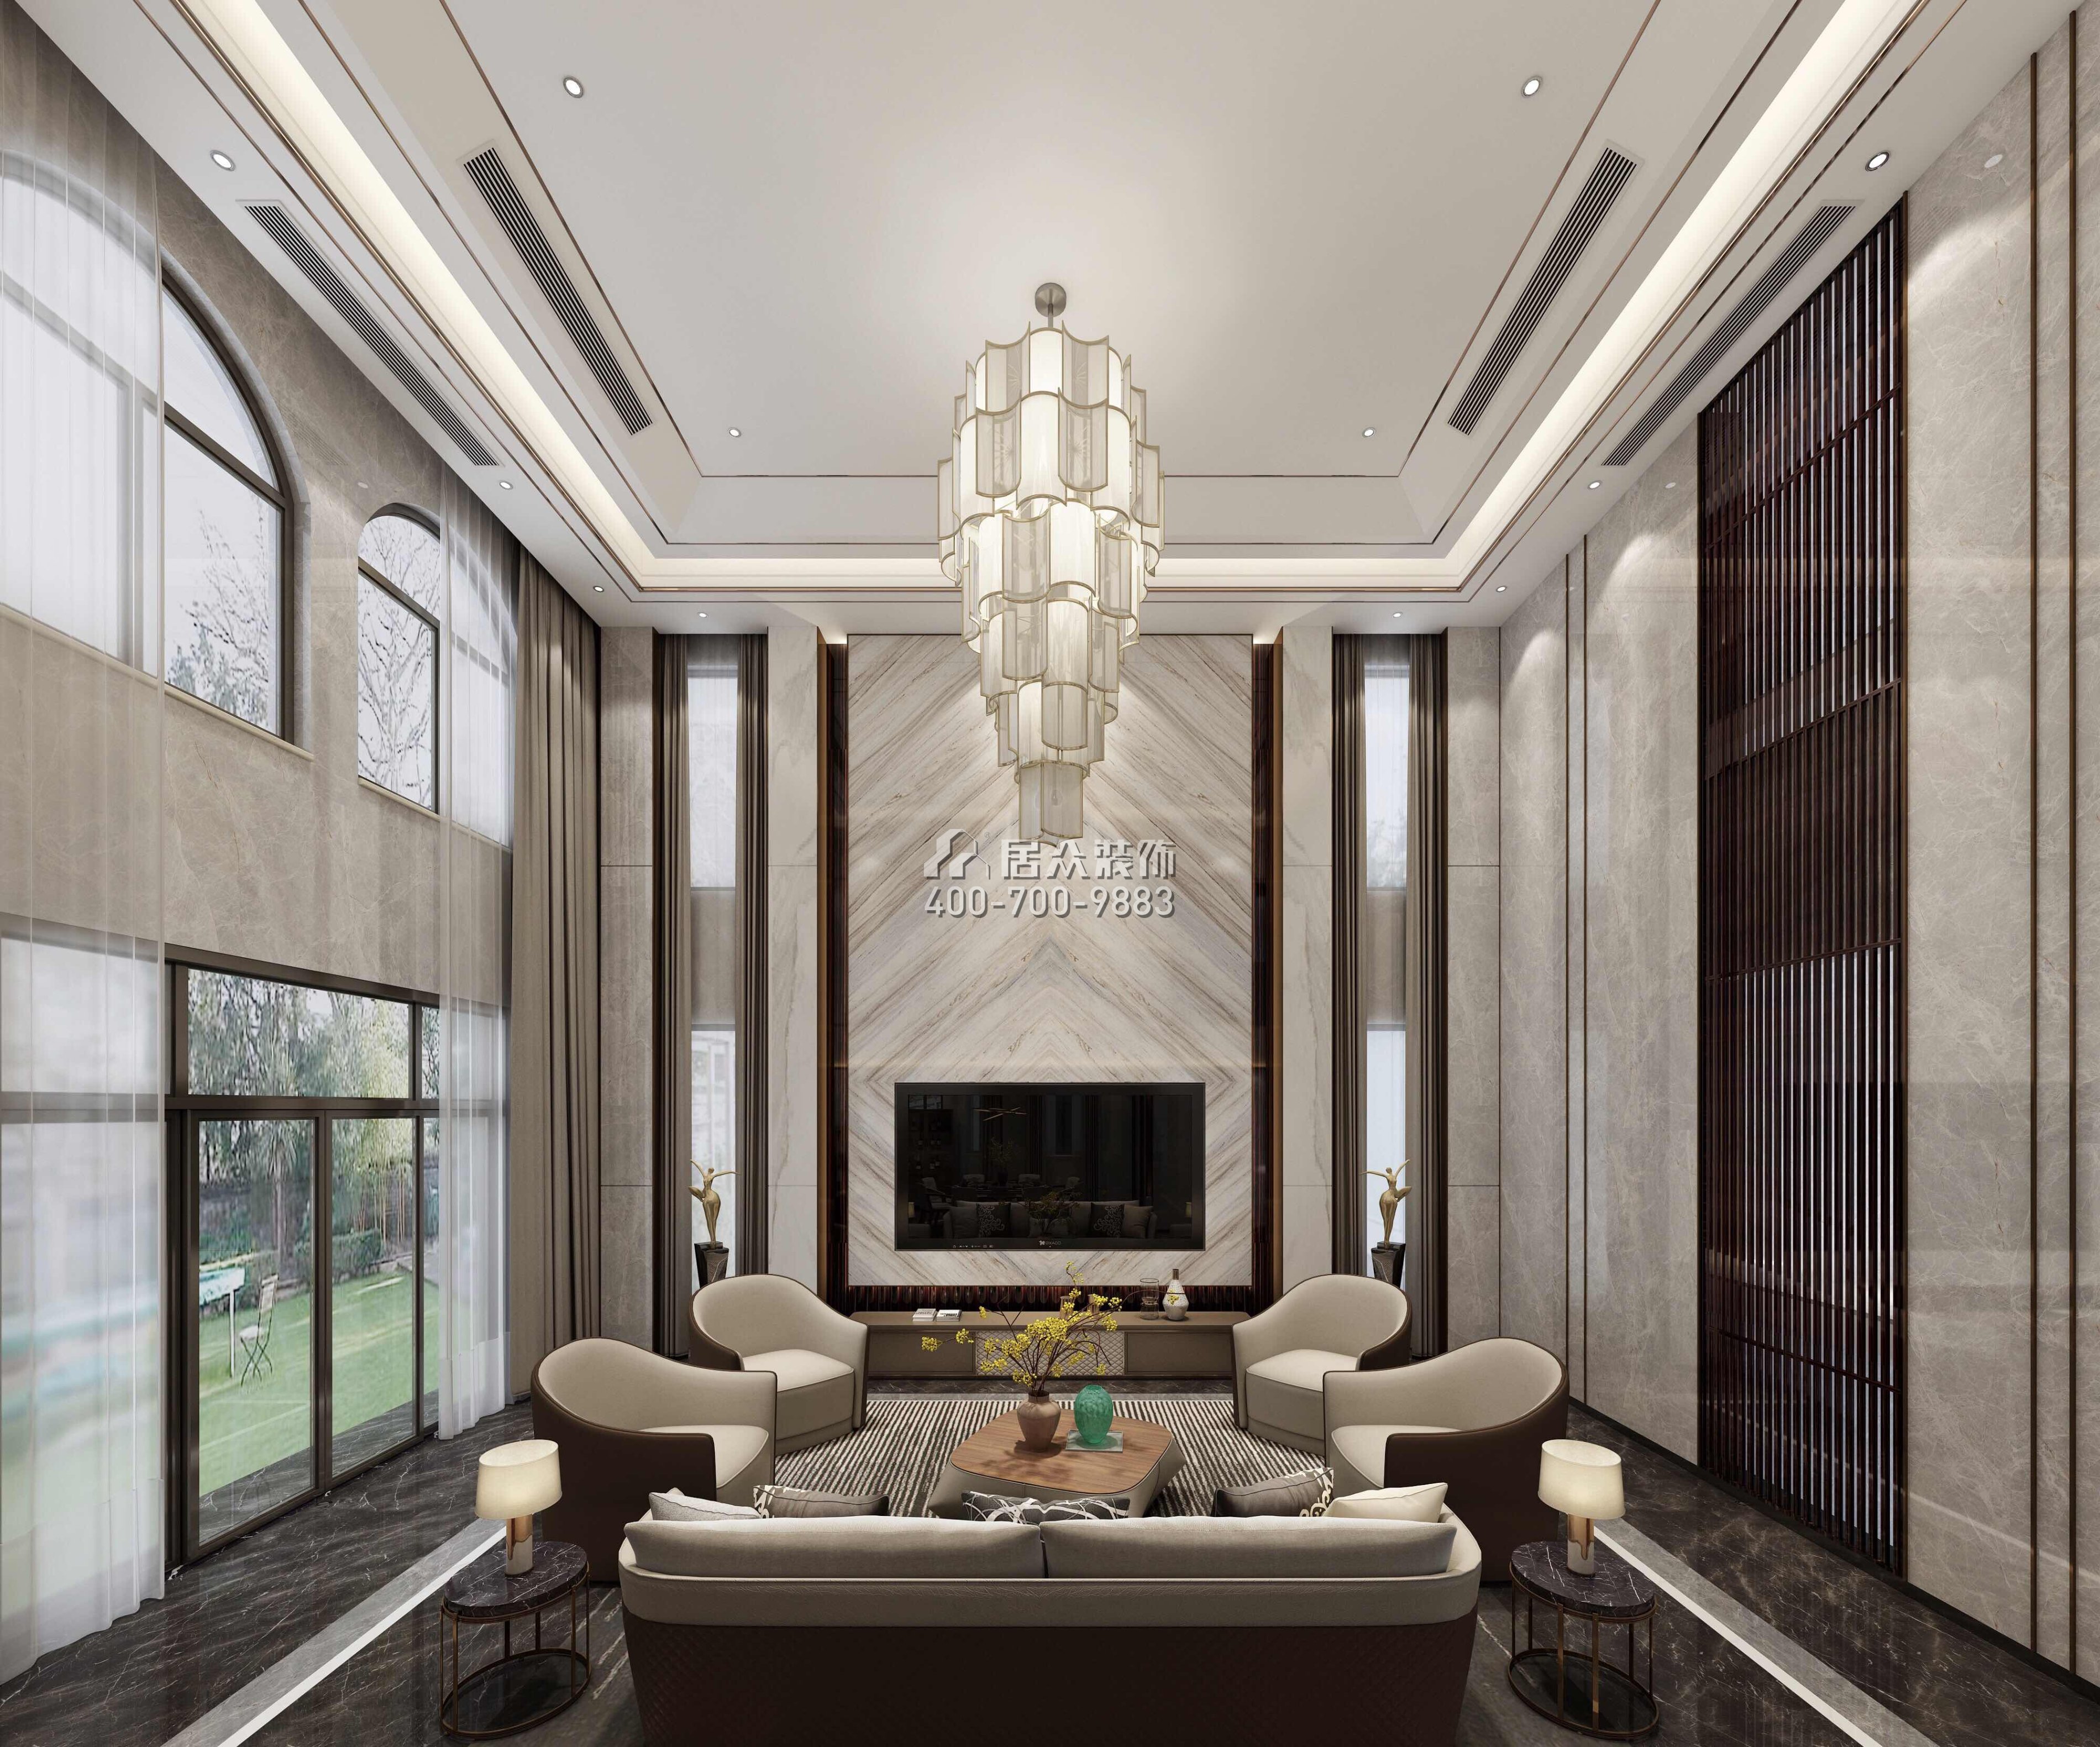 江畔豪庭800平方米現代簡約風格別墅戶型客廳裝修效果圖